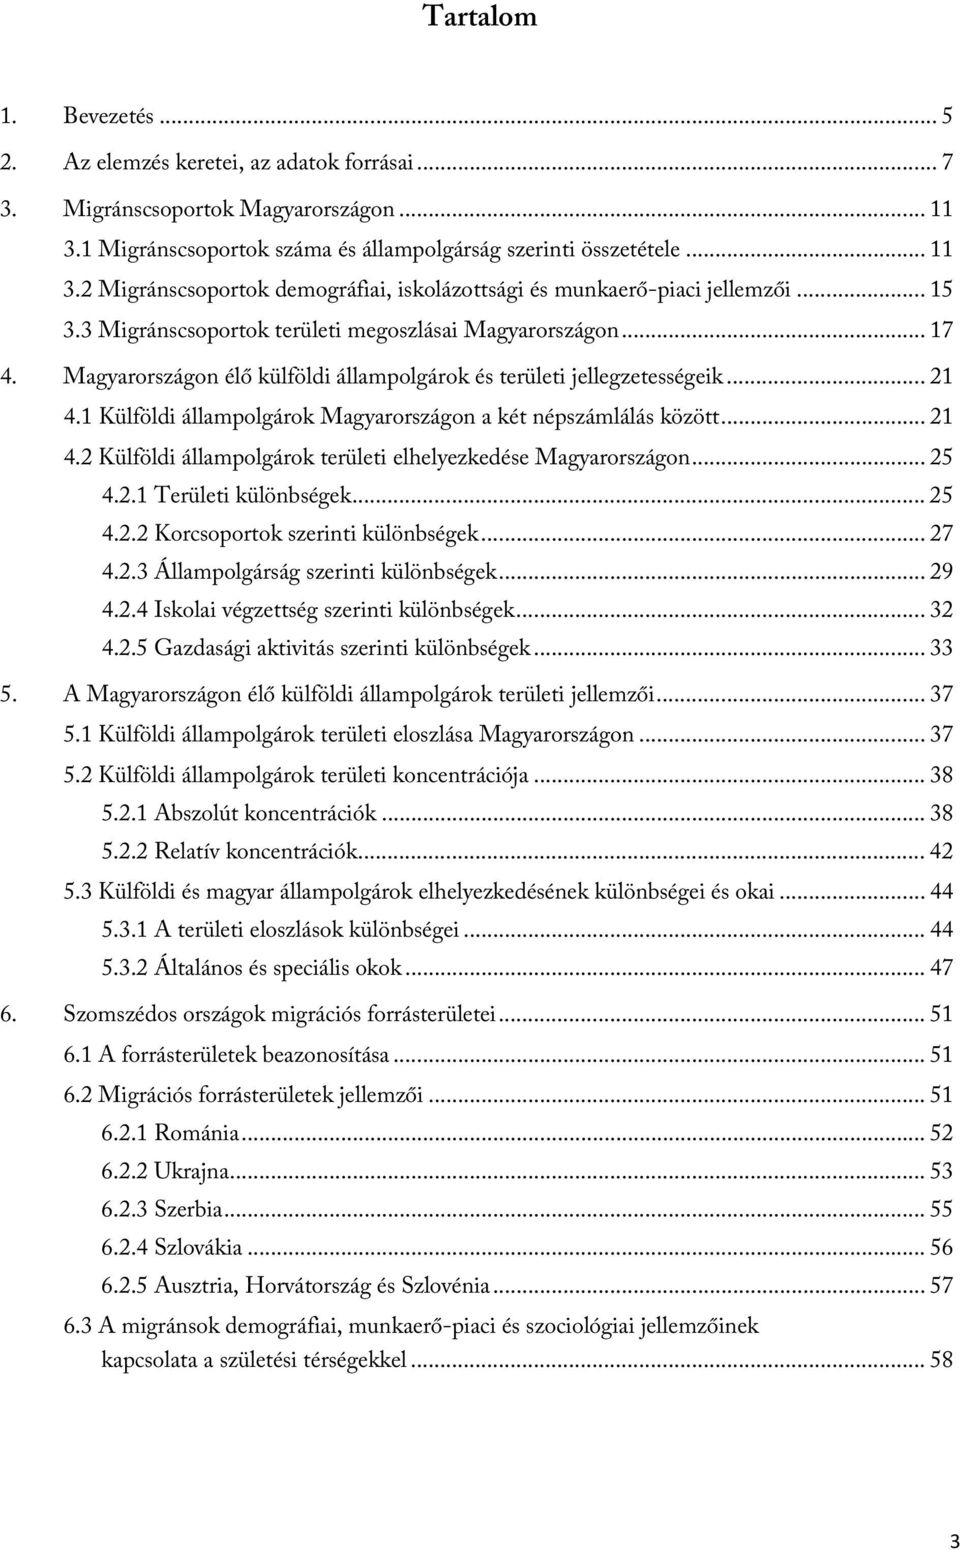 1 Külföldi állampolgárok Magyarországon a két népszámlálás között... 21 4.2 Külföldi állampolgárok területi elhelyezkedése Magyarországon... 25 4.2.1 Területi különbségek... 25 4.2.2 Korcsoportok szerinti különbségek.